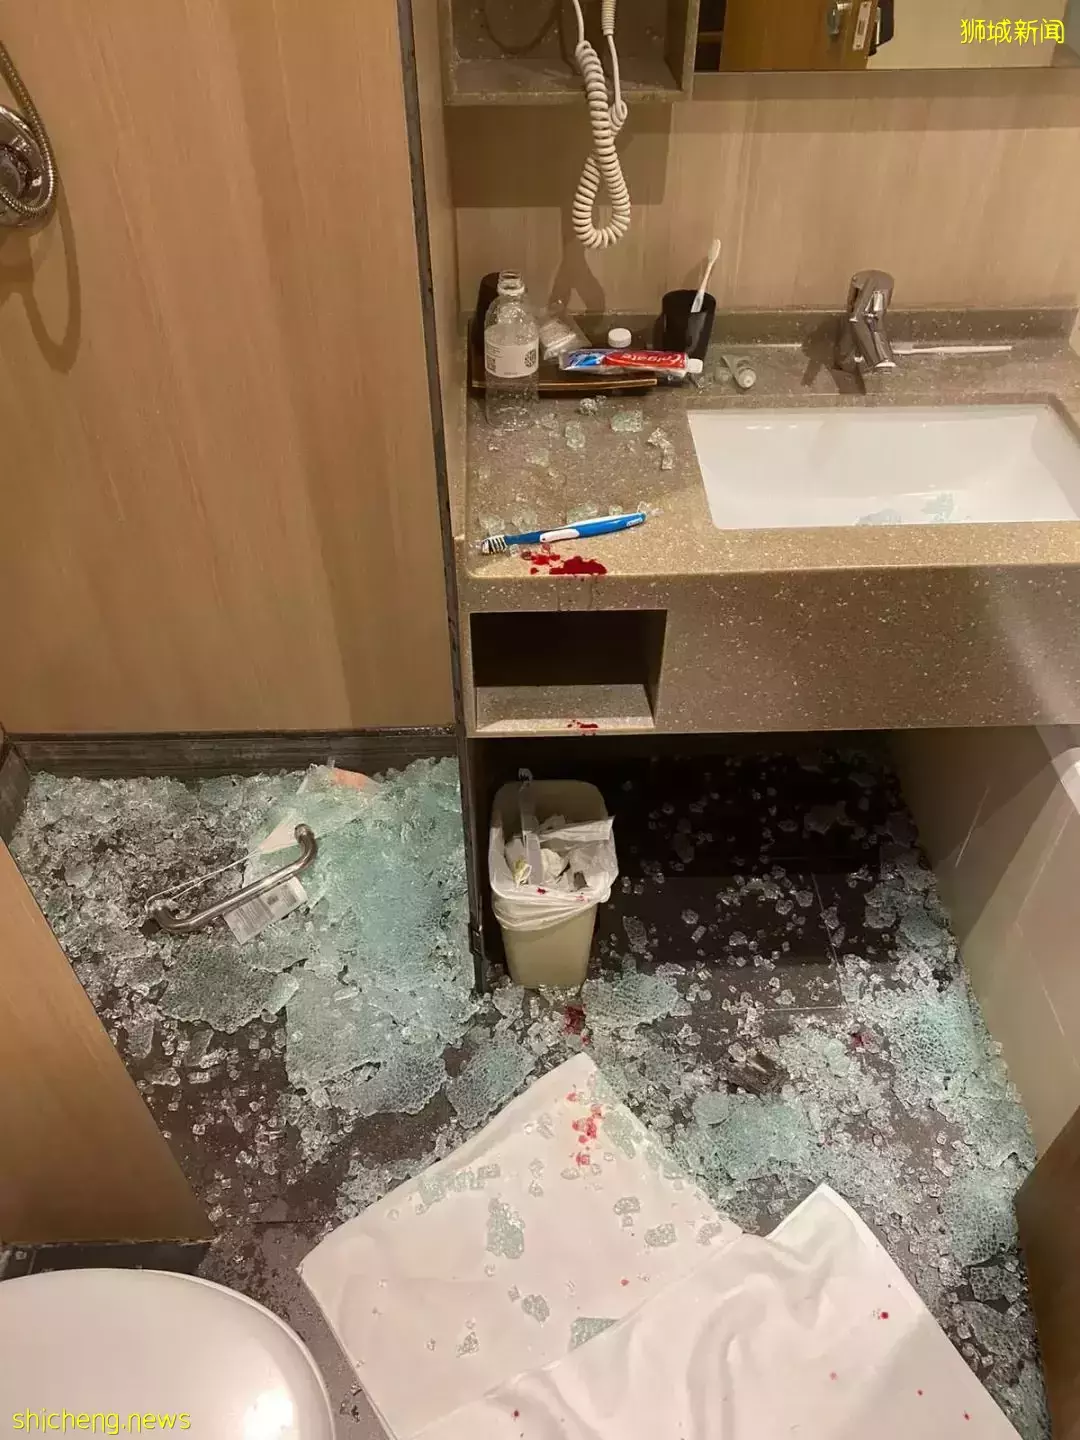 到新加坡圣淘沙度假庆生，洗澡时玻璃门爆裂溅落，41岁女子伤口长八公分